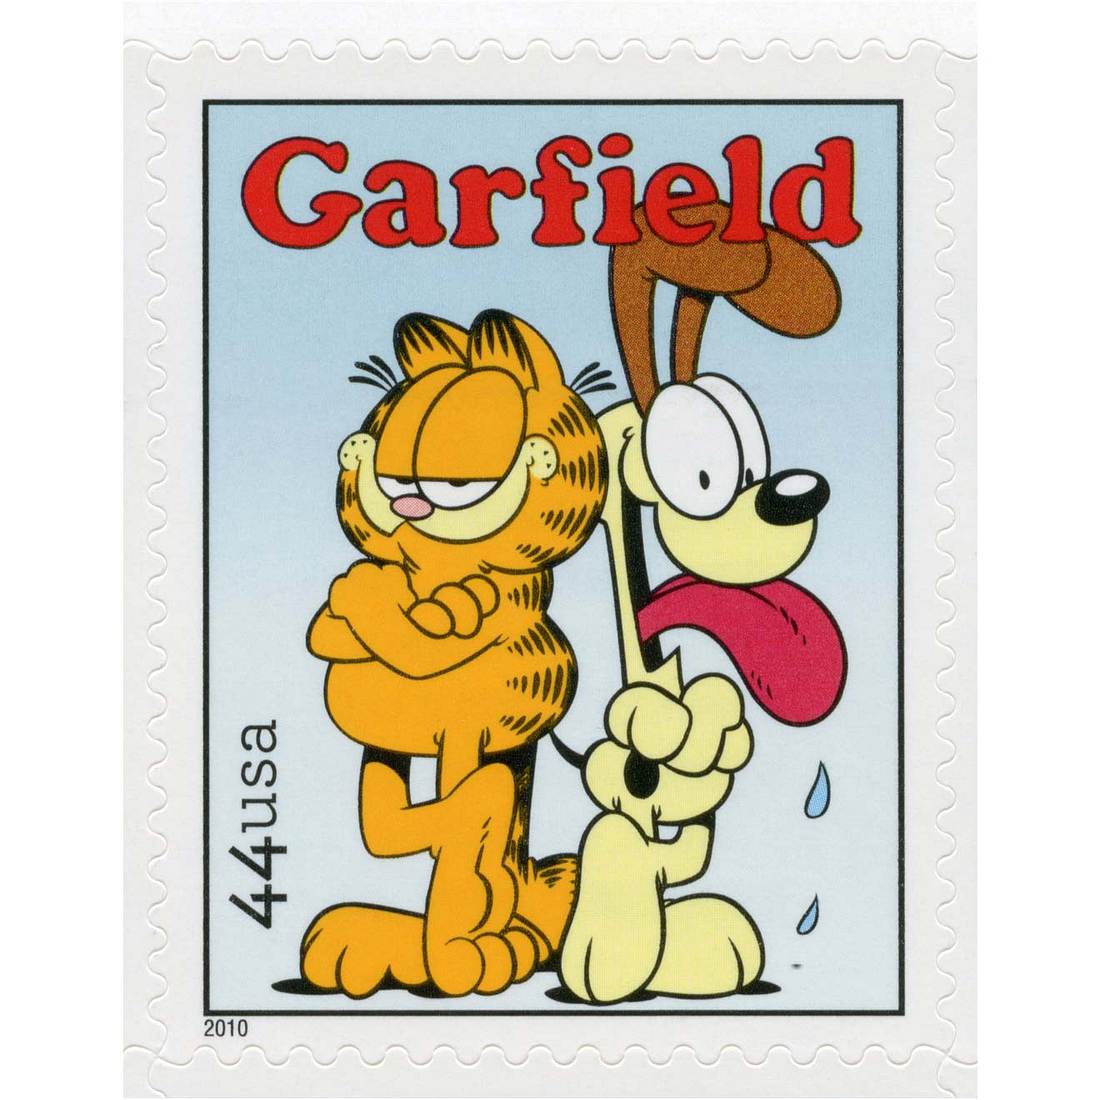 Die beliebtesten Comicfiguren Garfield